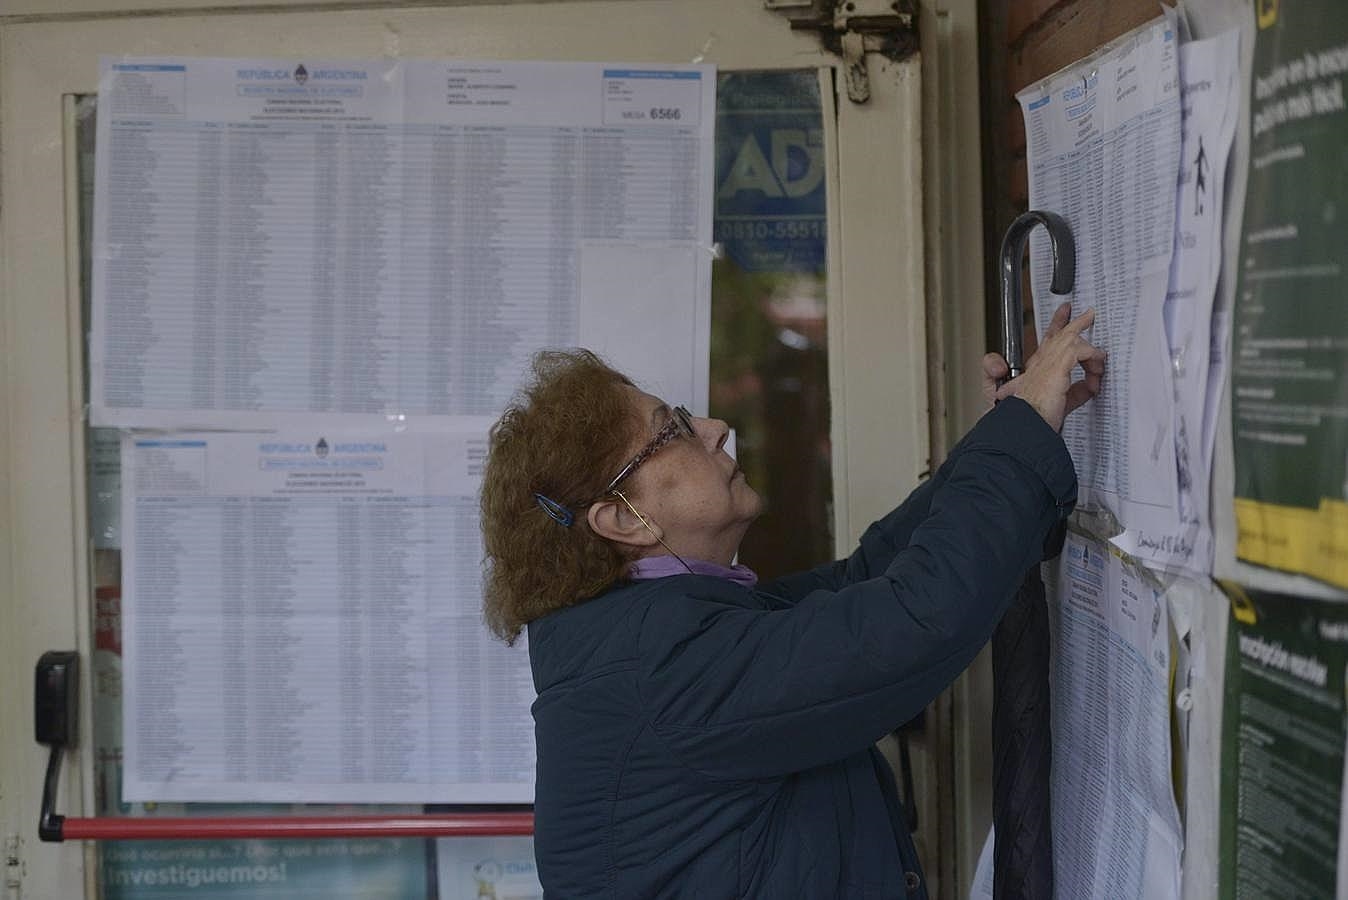 Ciudadanos argentinos participan hoy, domingo 9 de agosto de 2015, en las elecciones primarias en el país